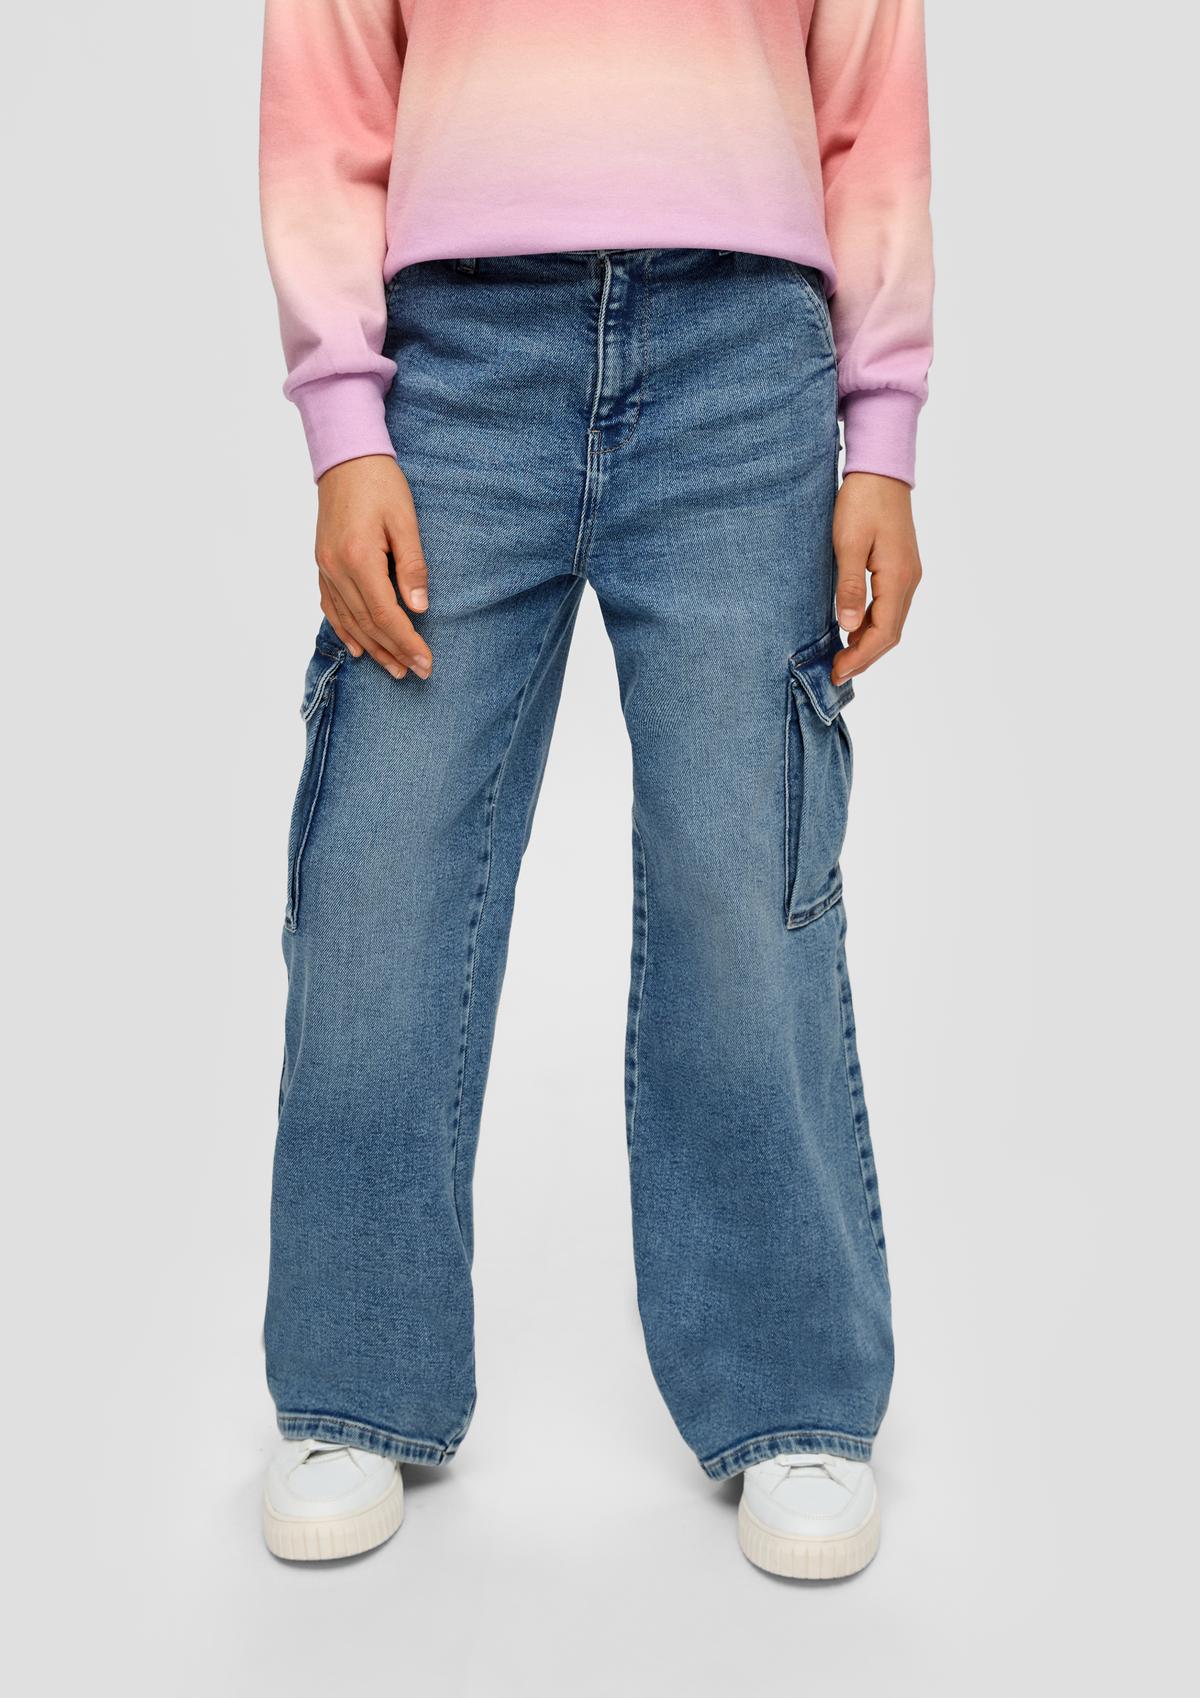 Jeans hlače/kroj Loose Fit/Super High Rise/široke hlačnice